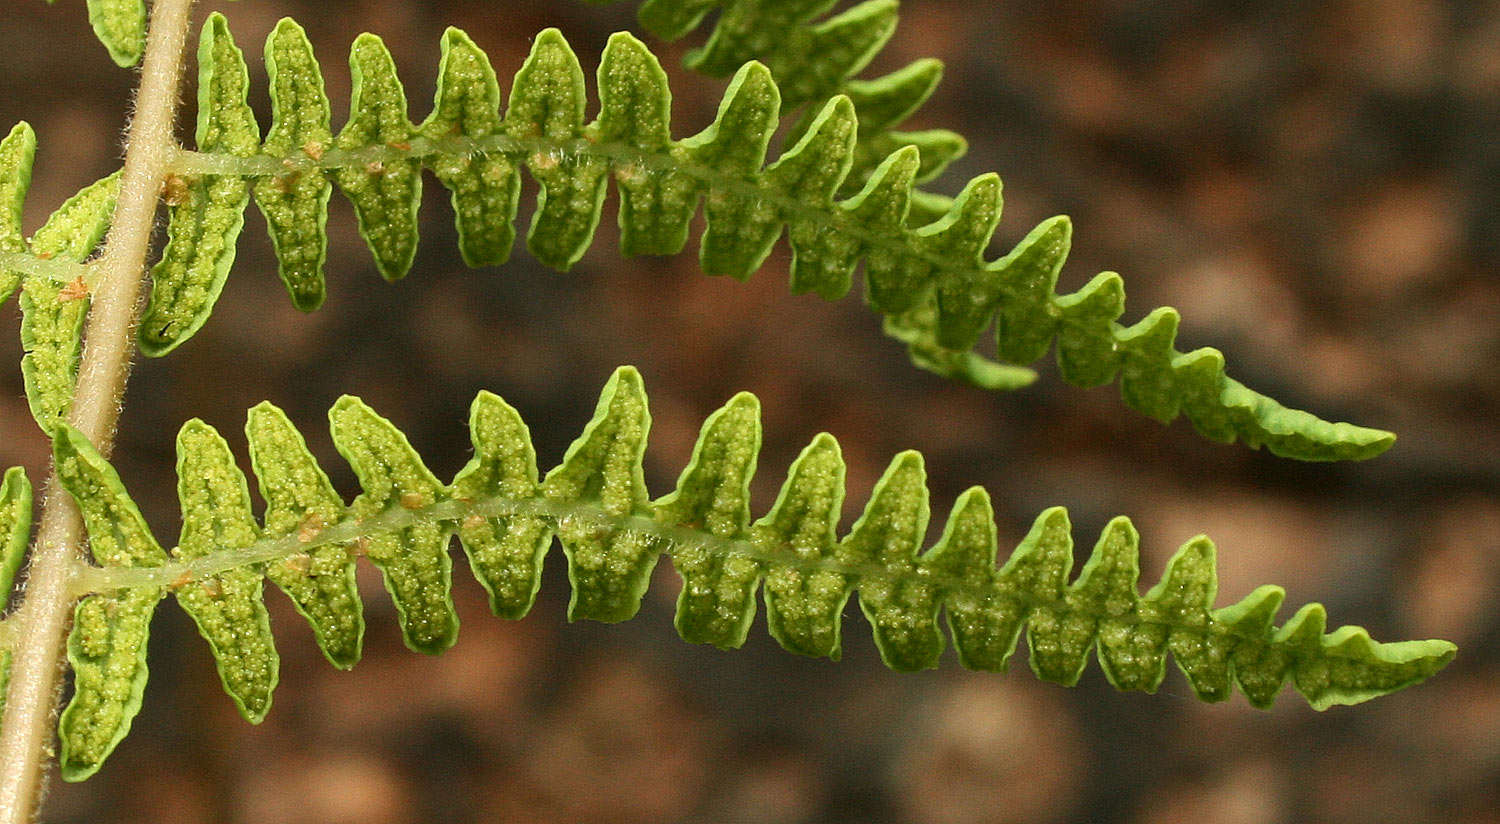 Image of maiden fern